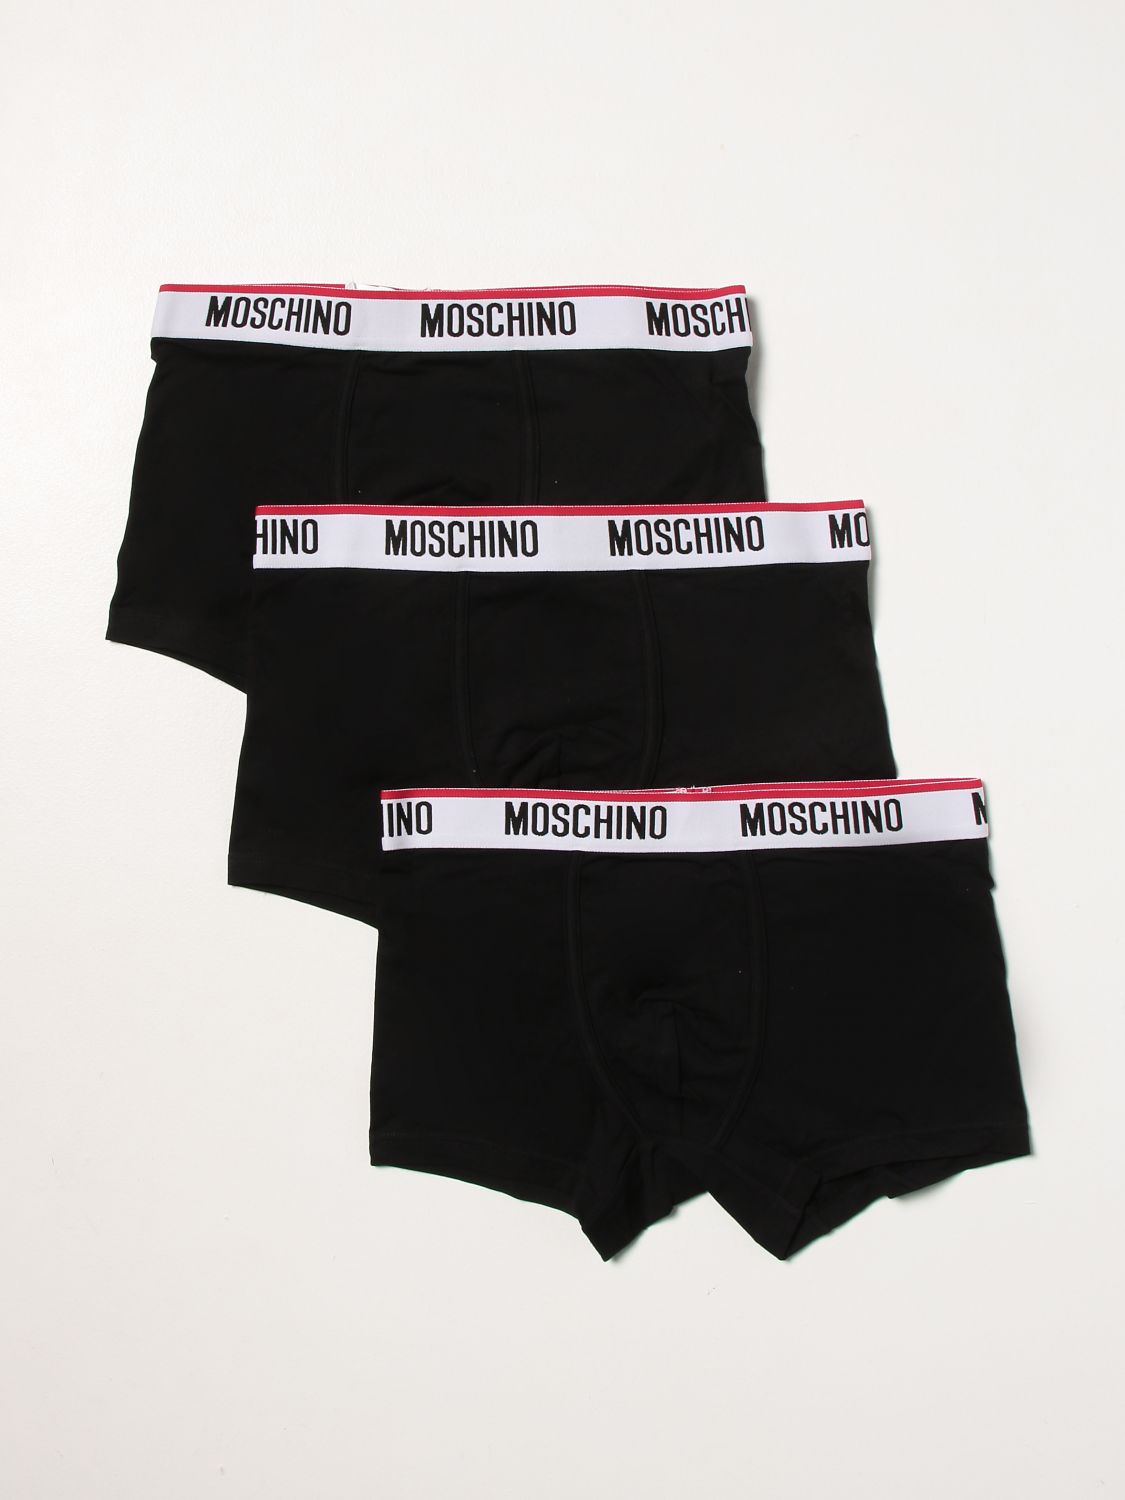 アンダーウェア Moschino Underwear: アンダーウェア メンズ Moschino Underwear ブラック 1 1